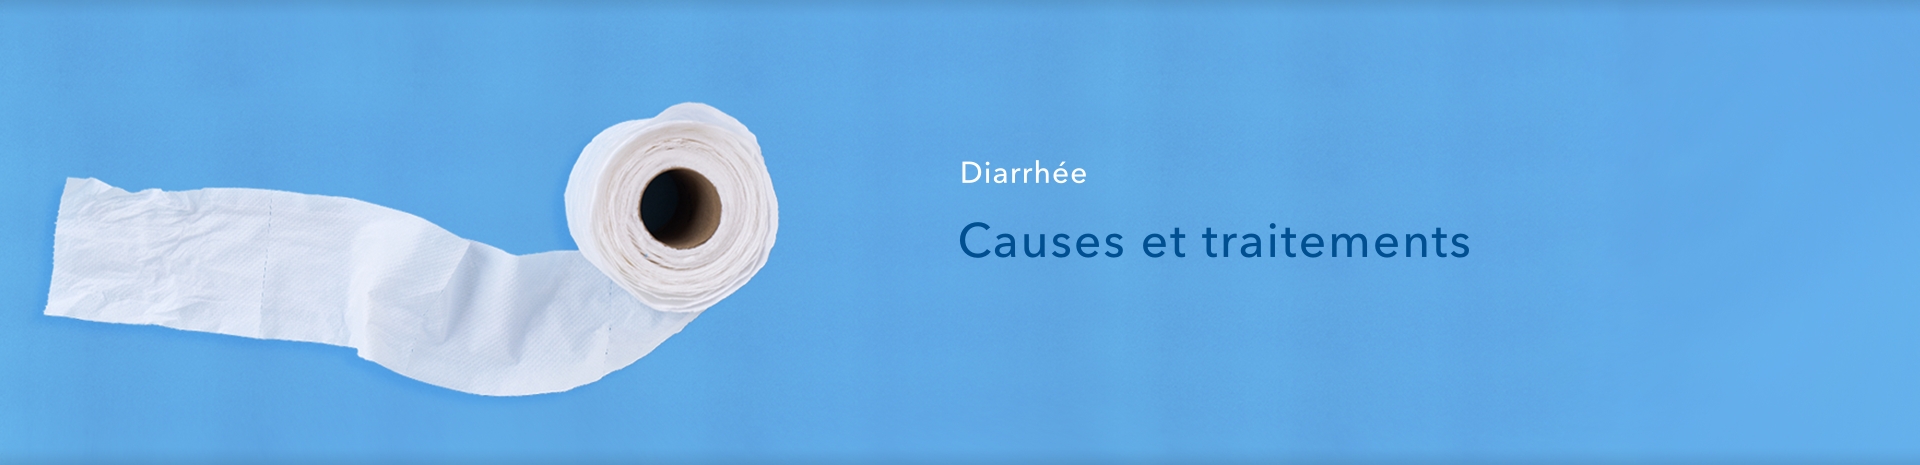 Diarrhée : causes et traitement